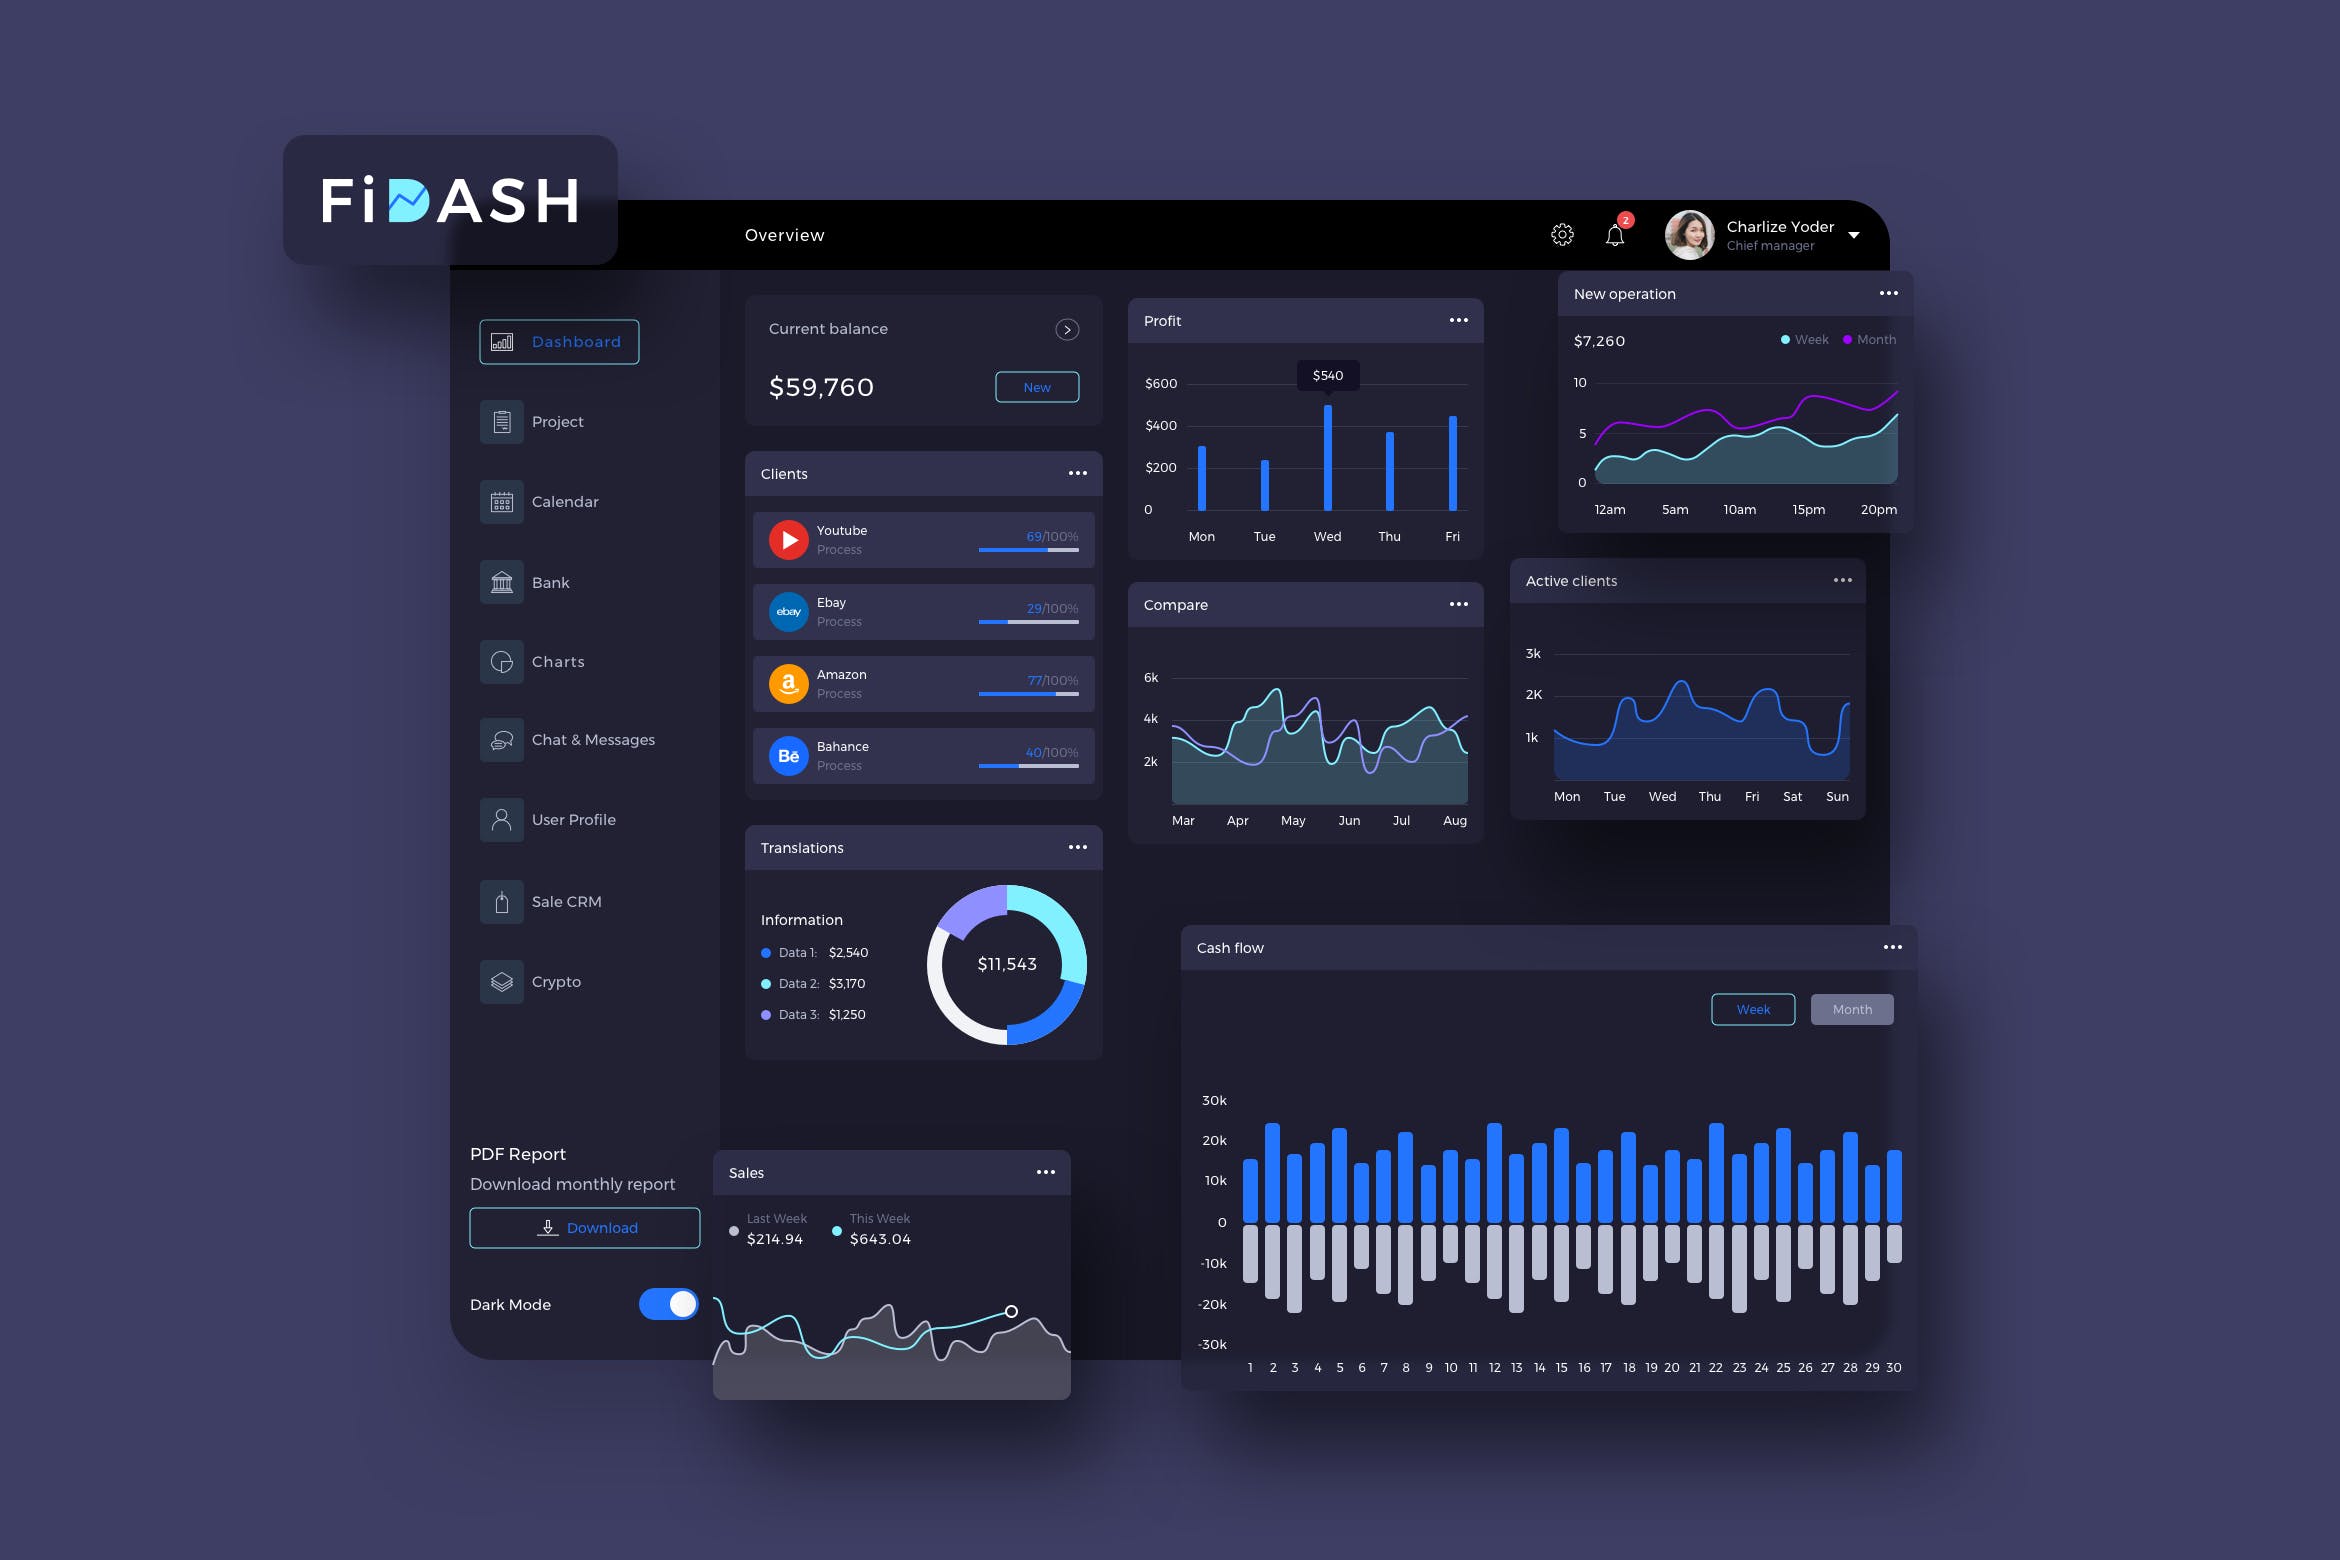 互联网金融平台交易数据统计分析后台UI设计-暗黑背景 FiDASH Finance Dashboard Ui Dark – P插图